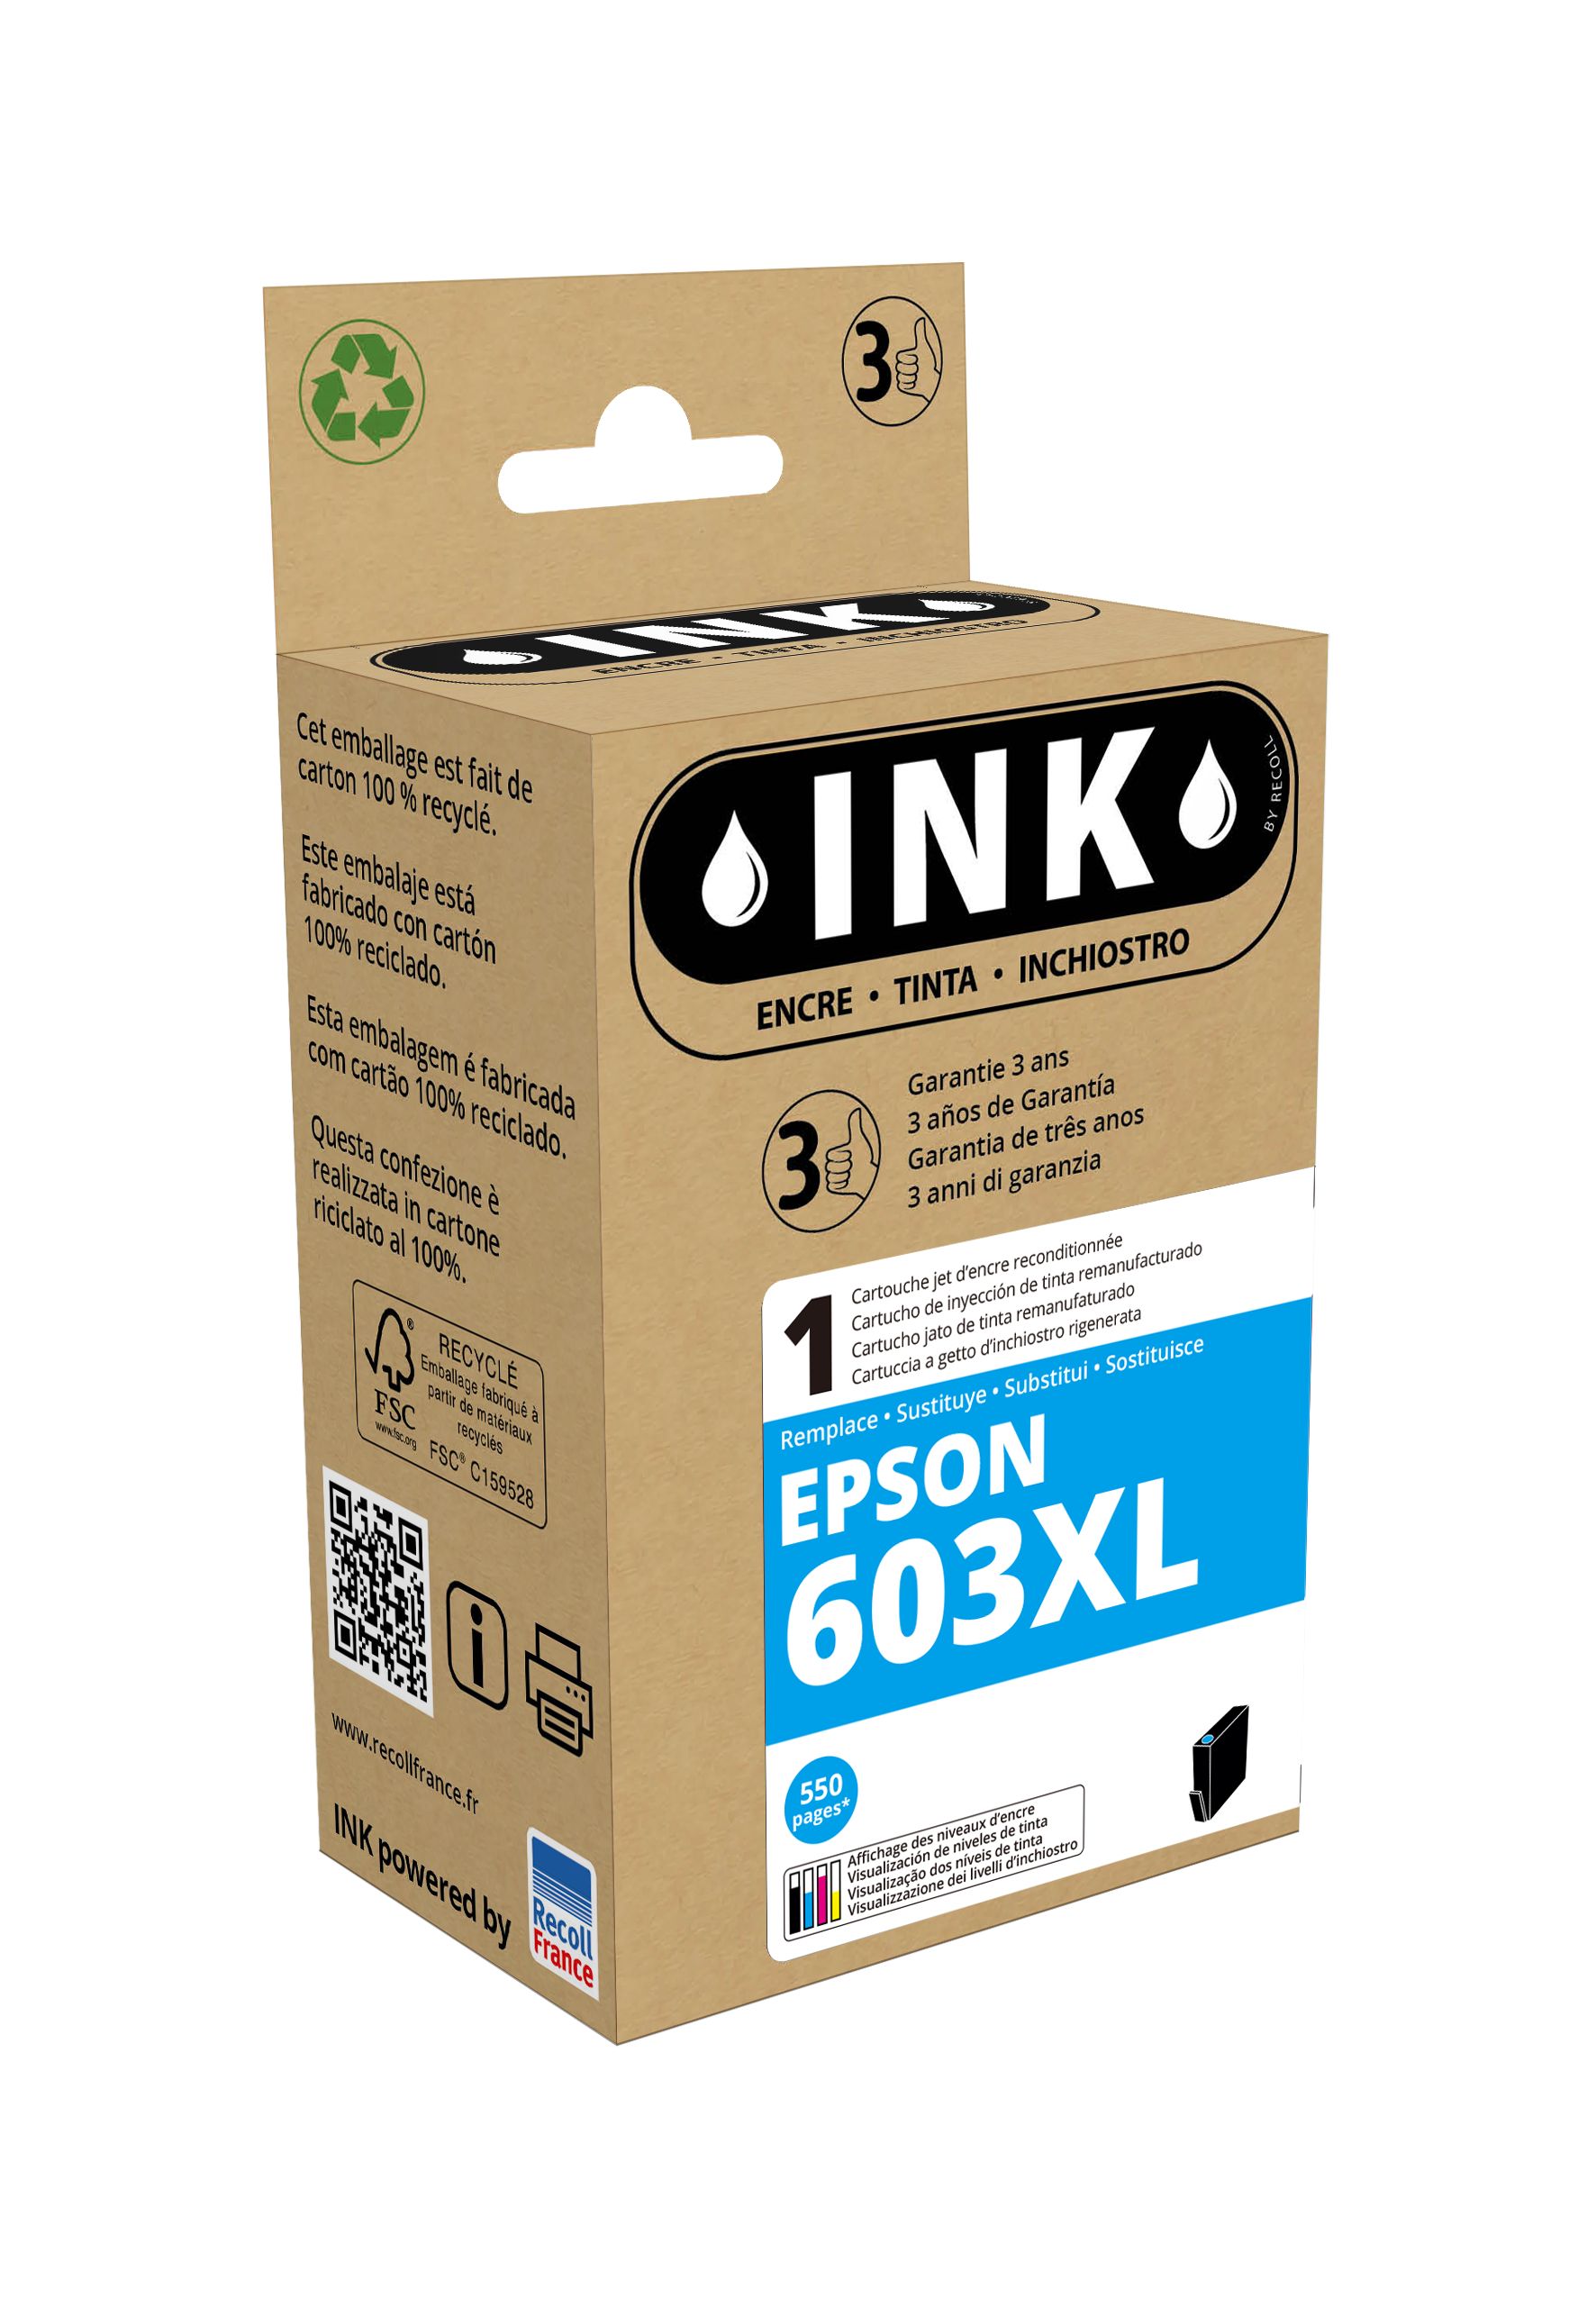 Cartouche compatible Epson 603XL Etoile de mer - cyan - ink